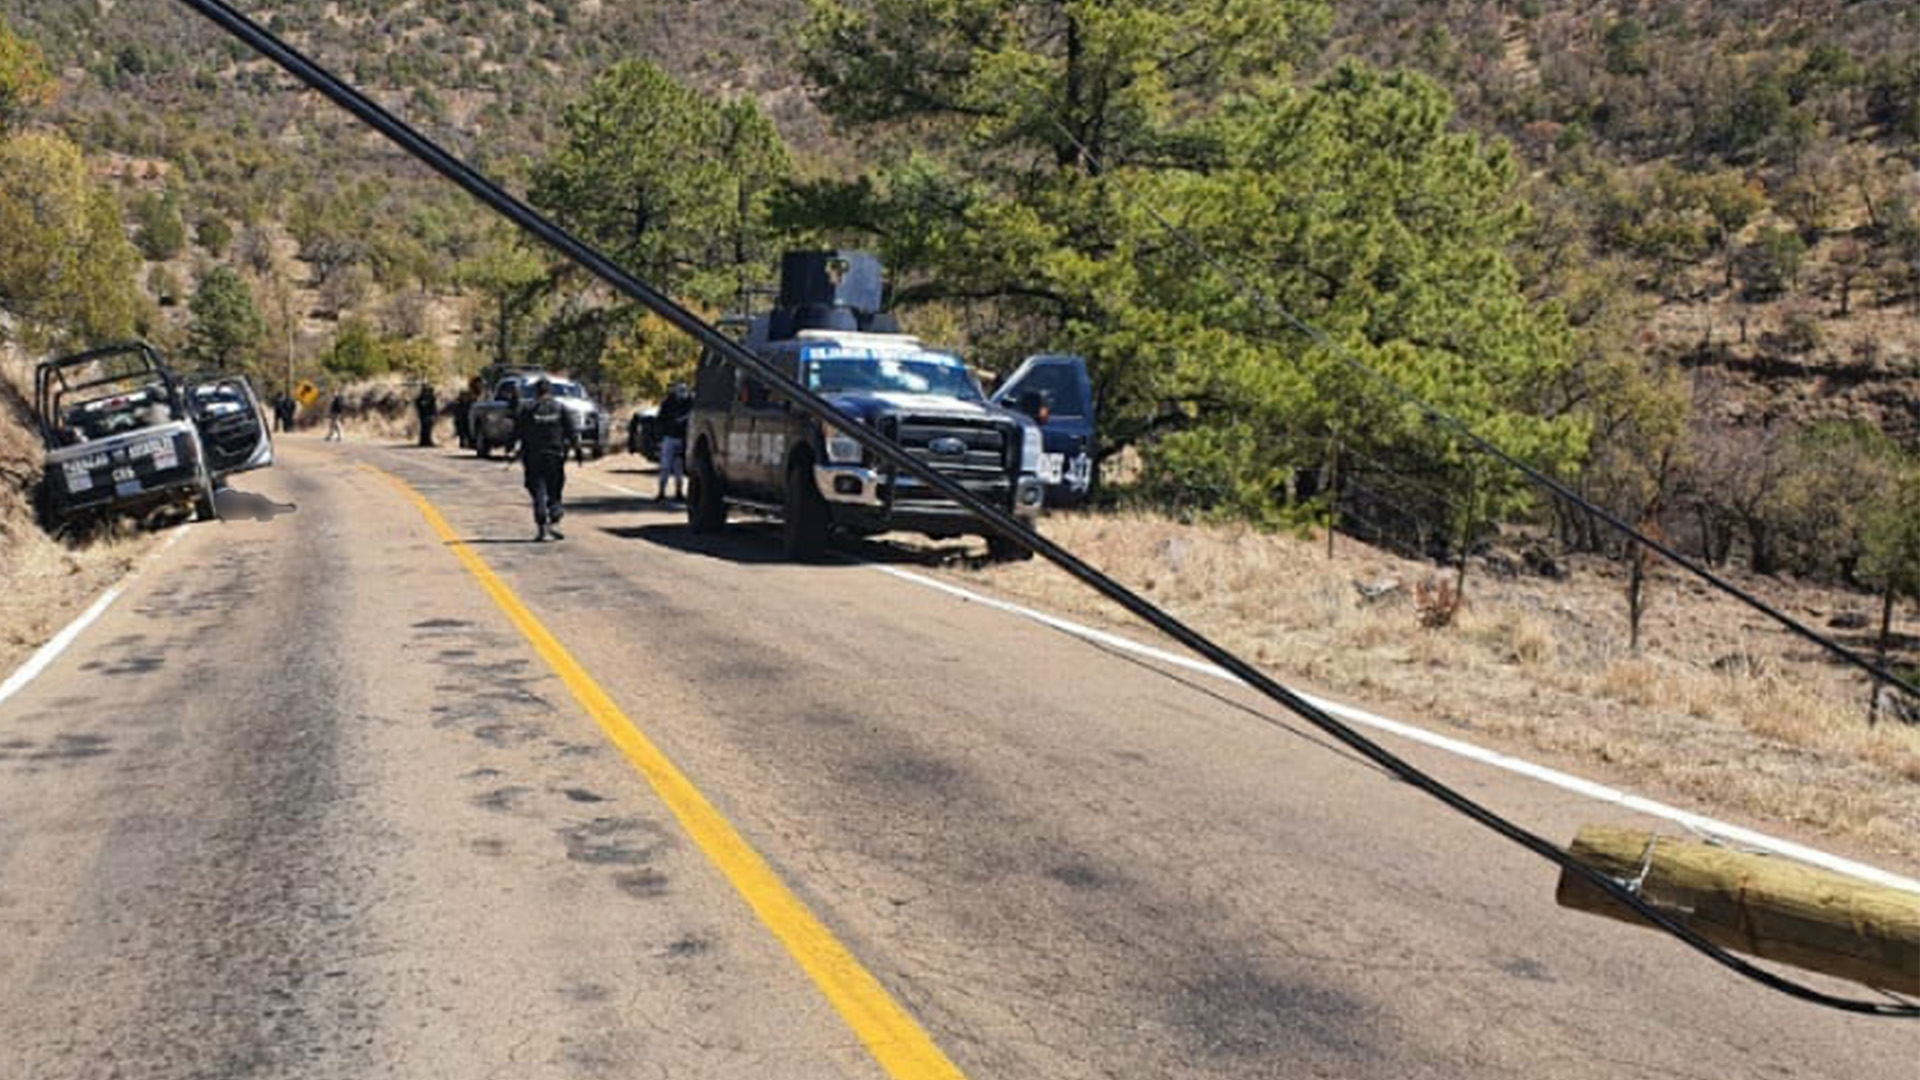 Violencia sacude la Sierra de Chihuahua:reportan varios enfrentamientos entre criminales y Ejercito  - Página 2 ADR2CZ7NGVC5BAGQC6KHSZS3NY